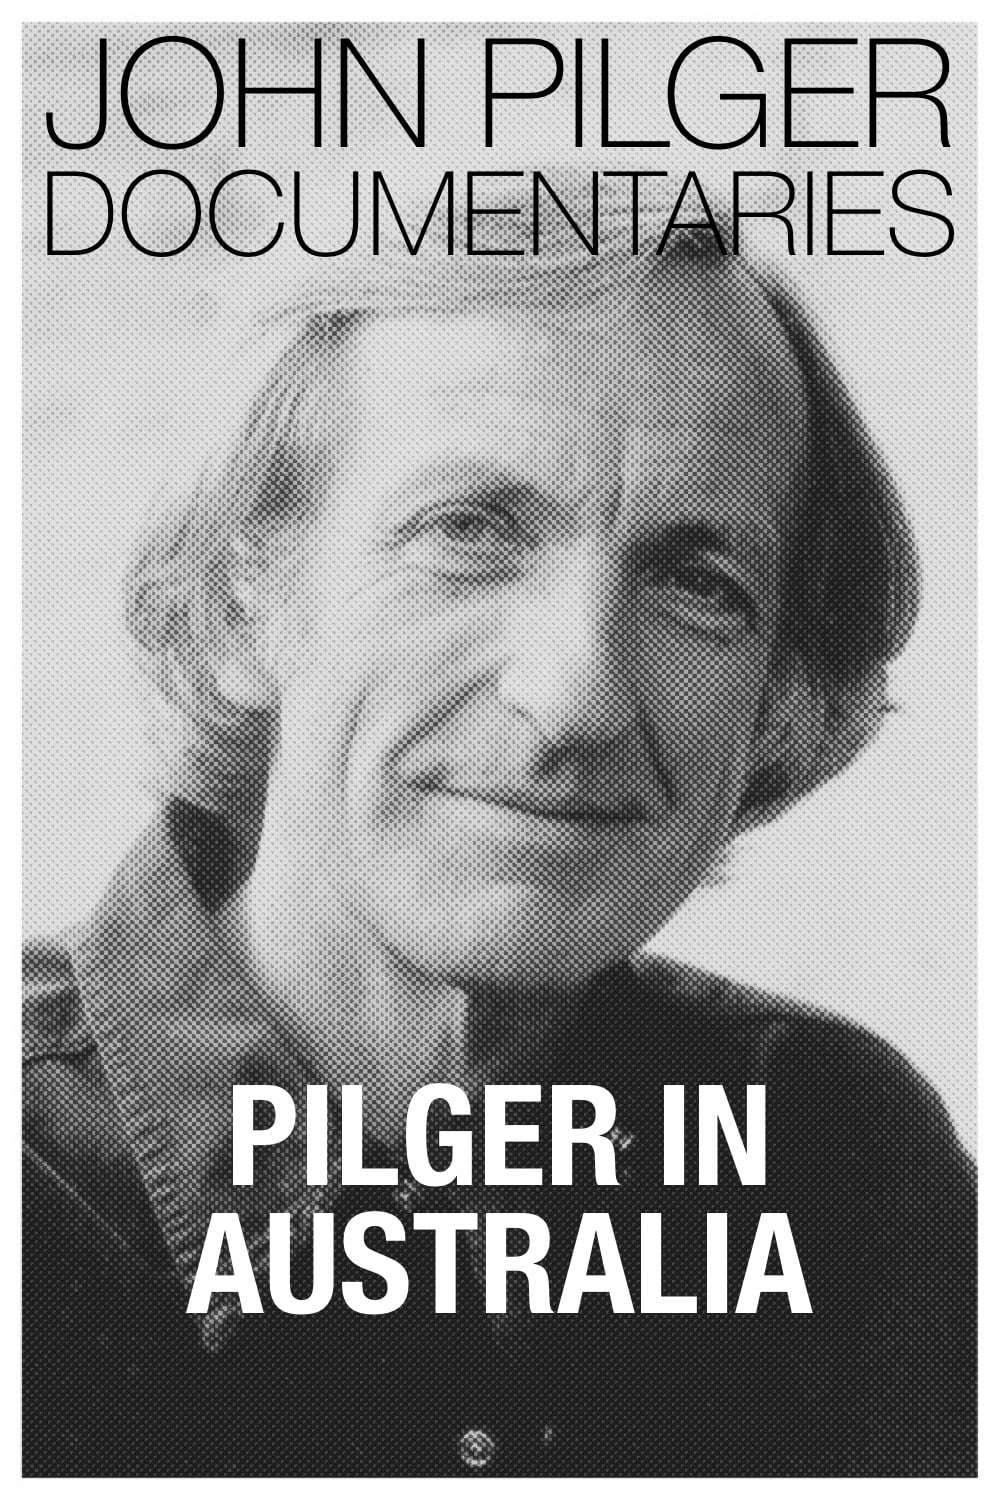 Pilger in Australia